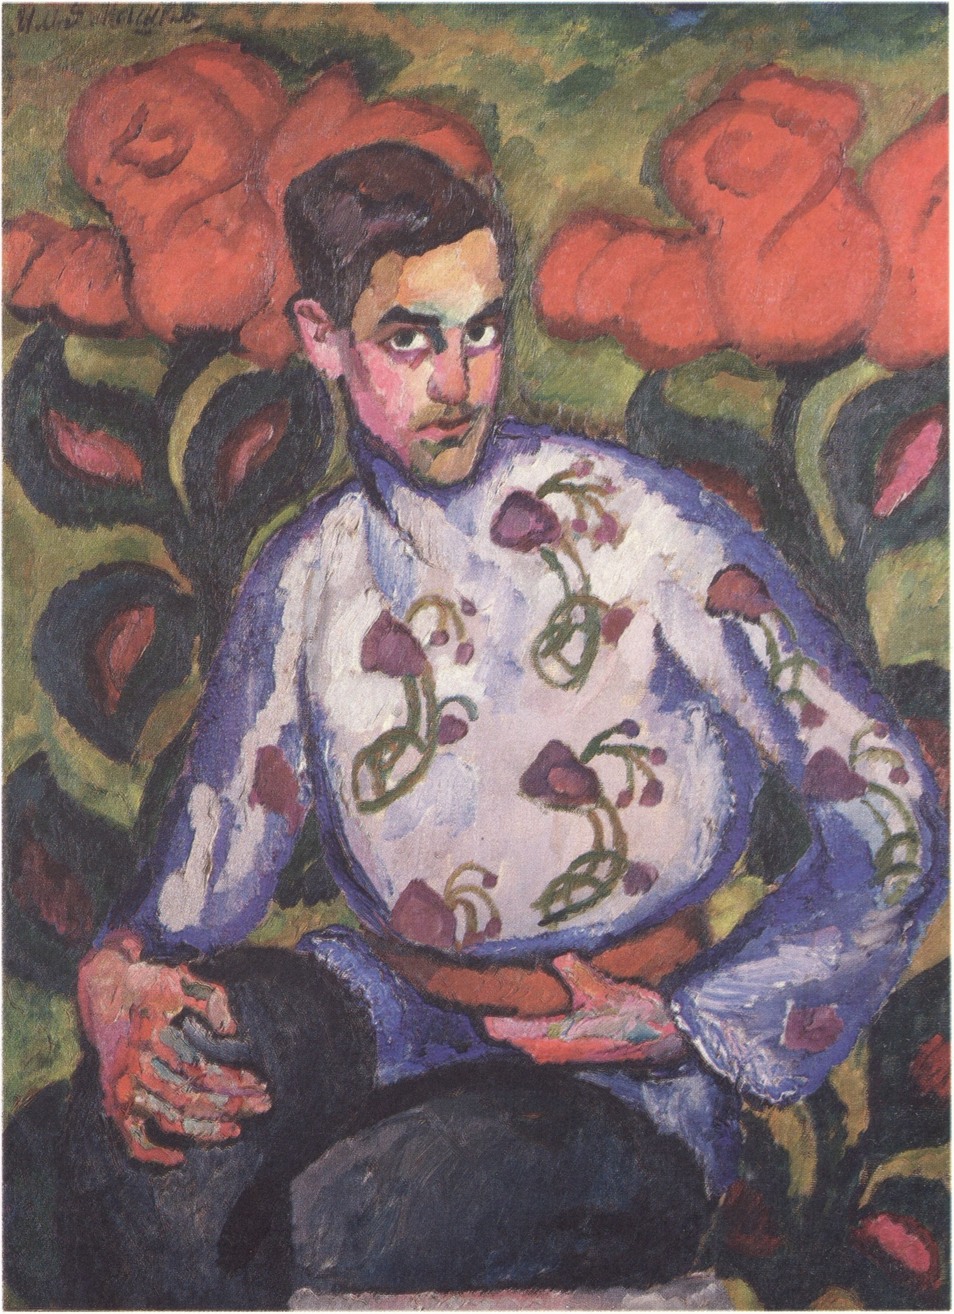 87. И. Машков. Портрет мальчика в расписной рубашке. 1909